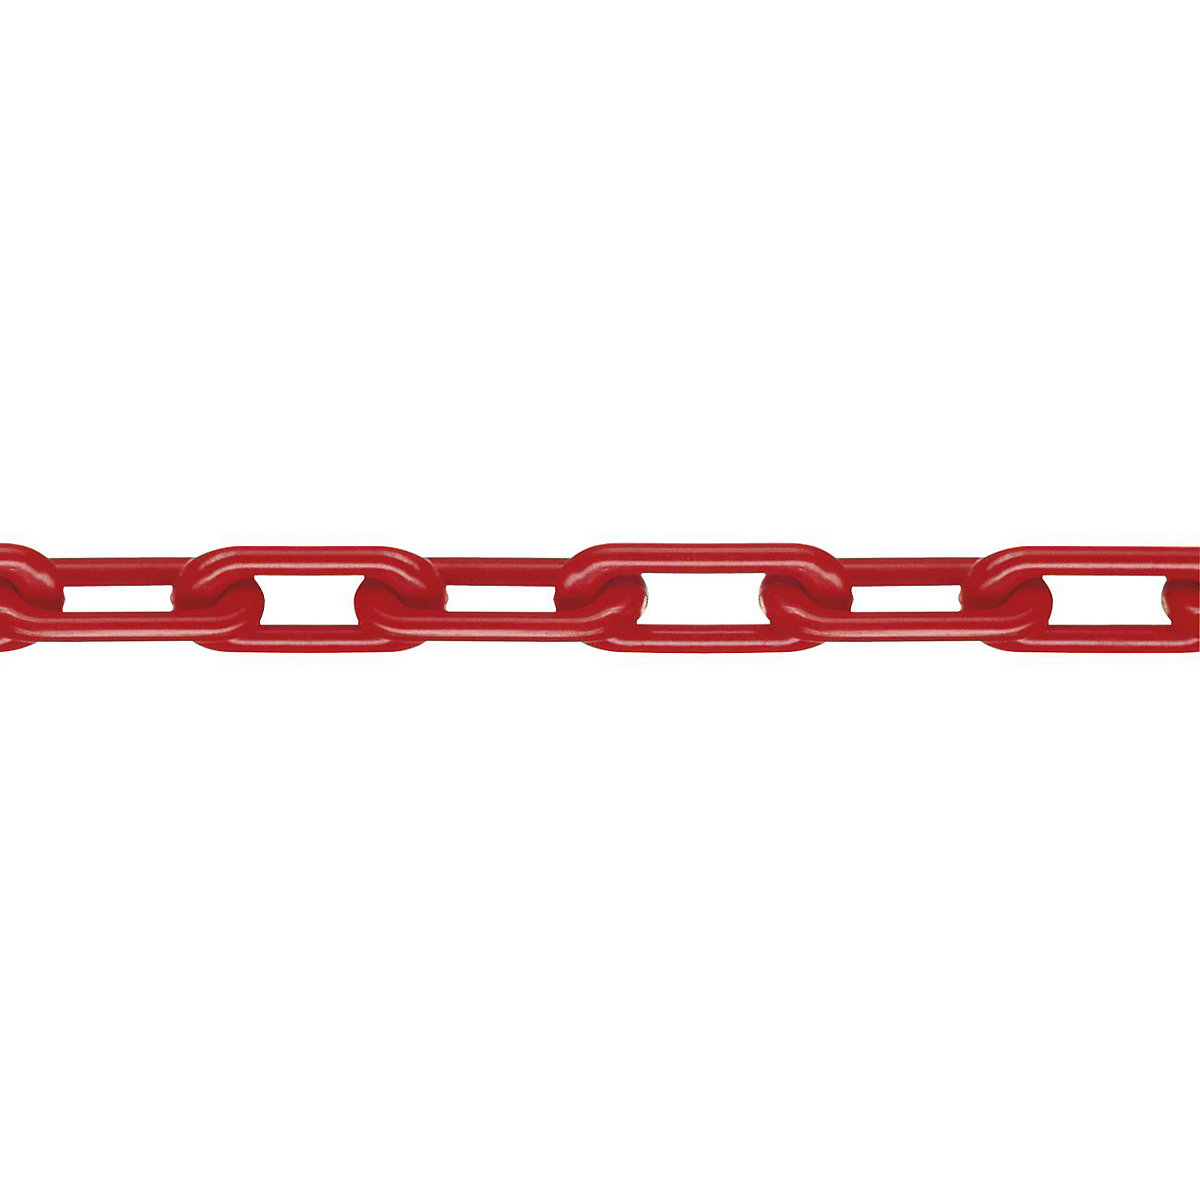 Kvalitetni najlonski lanac, kvaliteta MNK 8, dužina sklopa 25 m, u crvenoj boji-2